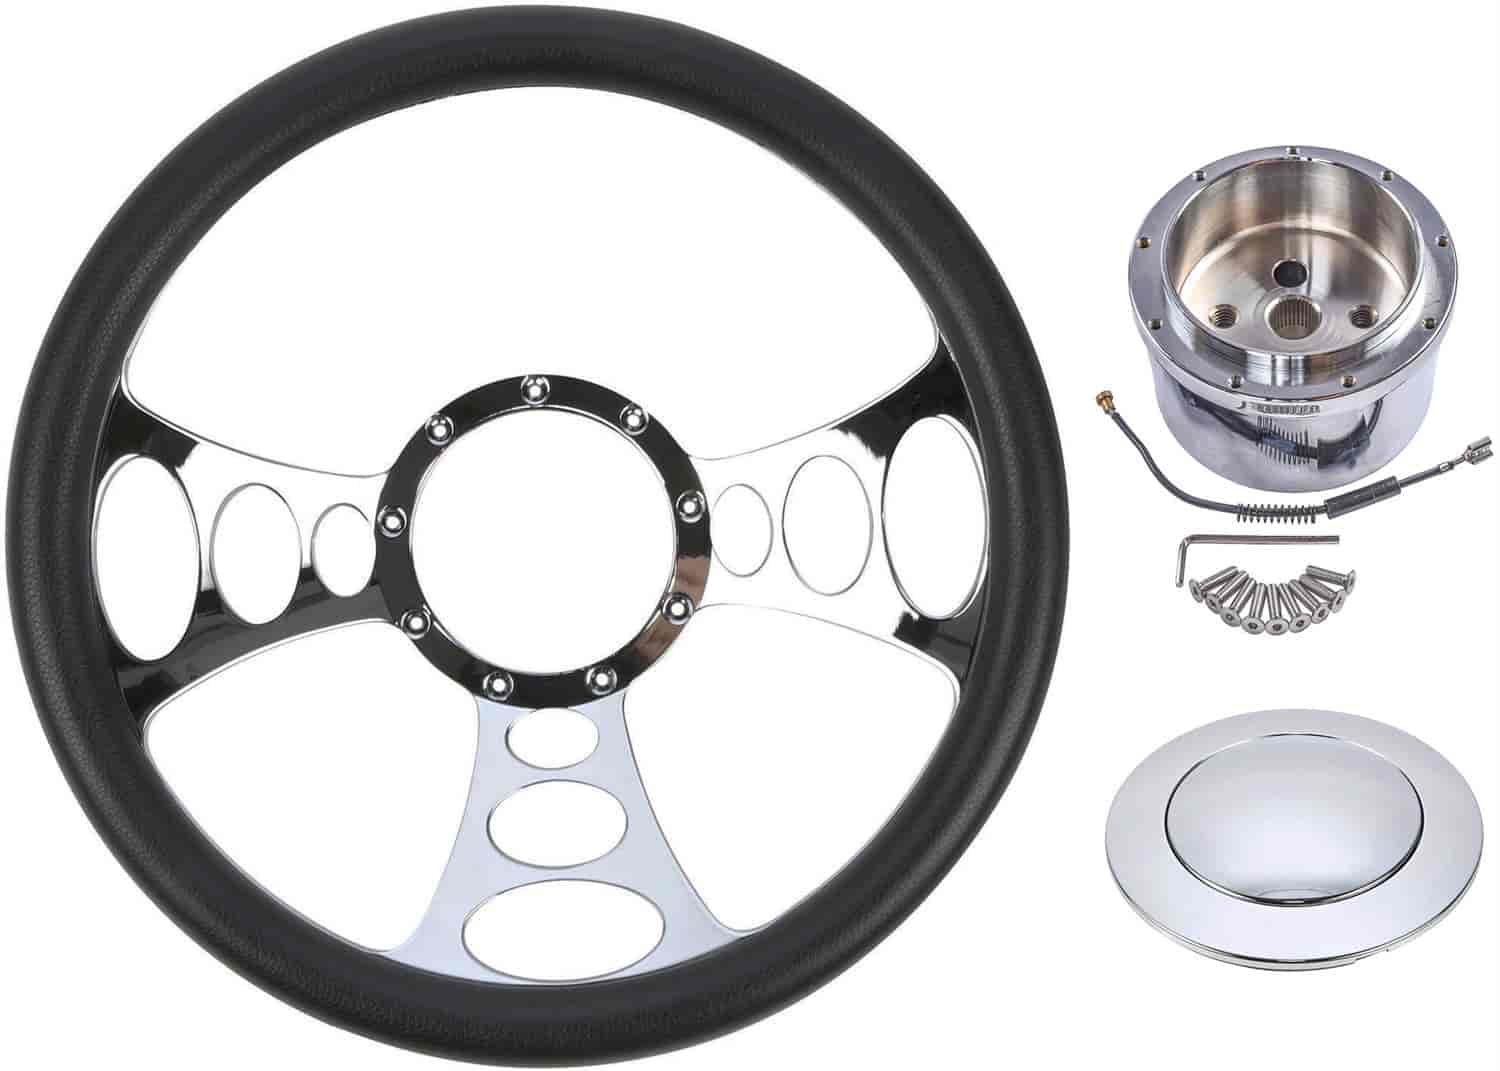 Chrome-Plated Billet Aluminum 14 in. Steering Wheel kit [Solstice Spoke Design]